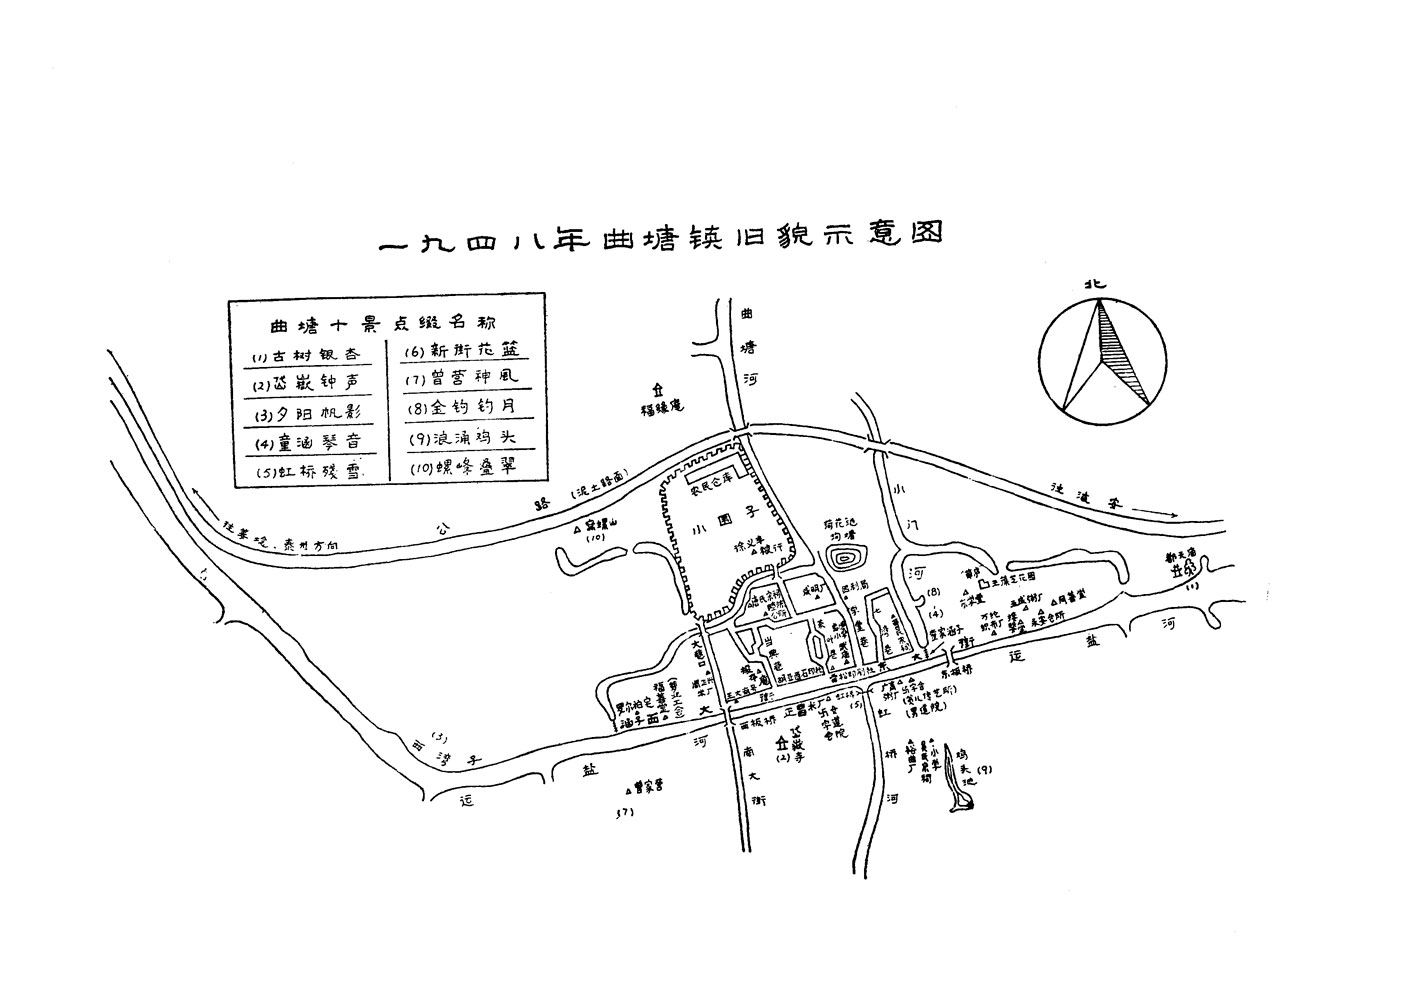 1948年曲塘鎮舊貌示意圖